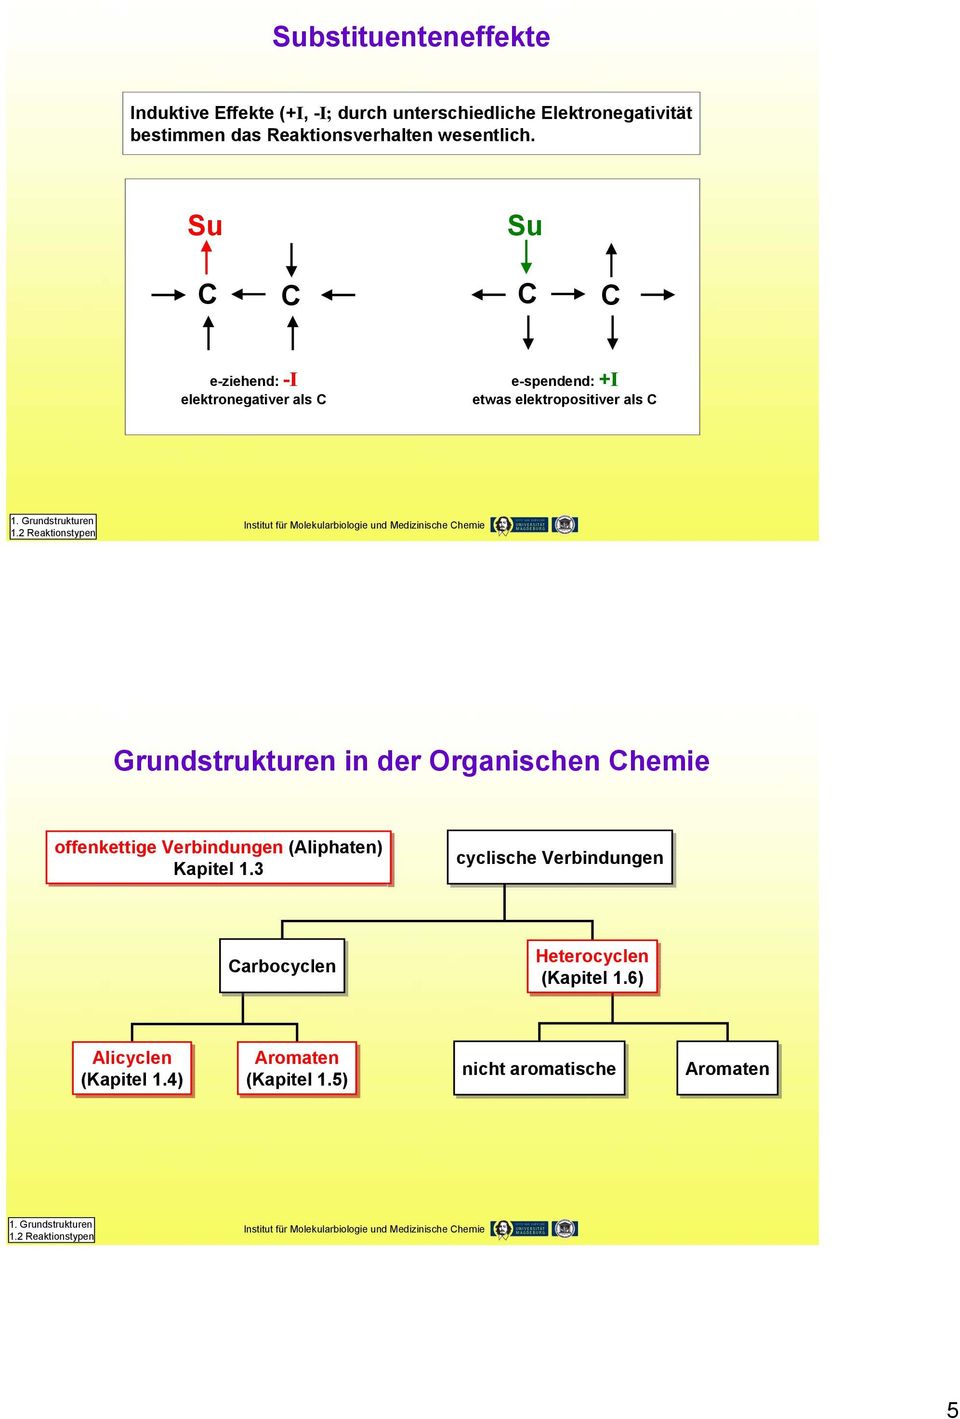 2 Reaktionstypen Grundstrukturen in der Organischen hemie offenkettige Verbindungen (Aliphaten) Kapitel 1.